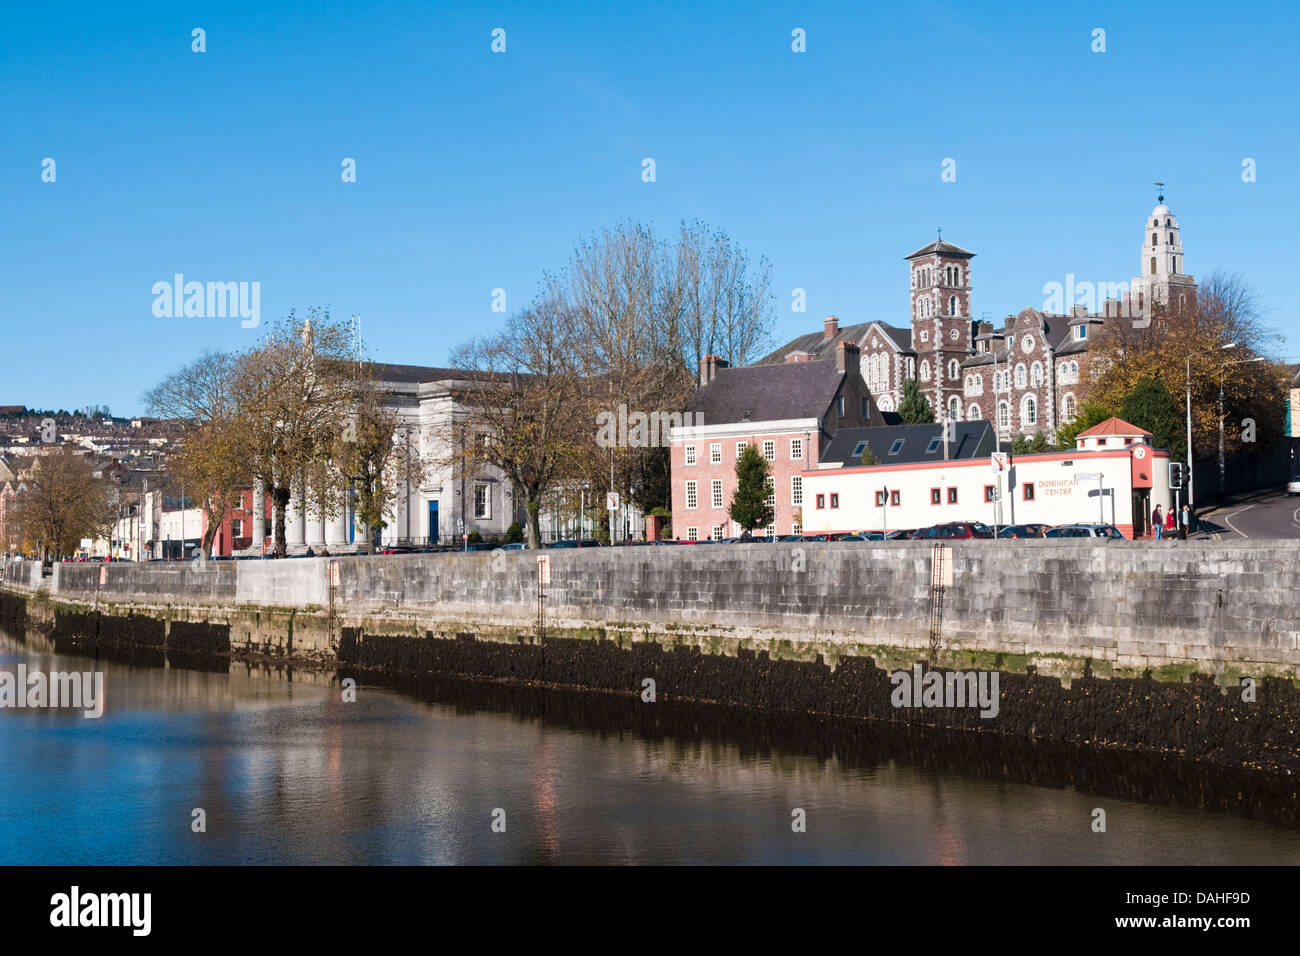 Afficher le long de la rivière Lee au quai des Papes dans le centre-ville de Cork, Irlande sur une journée ensoleillée Banque D'Images